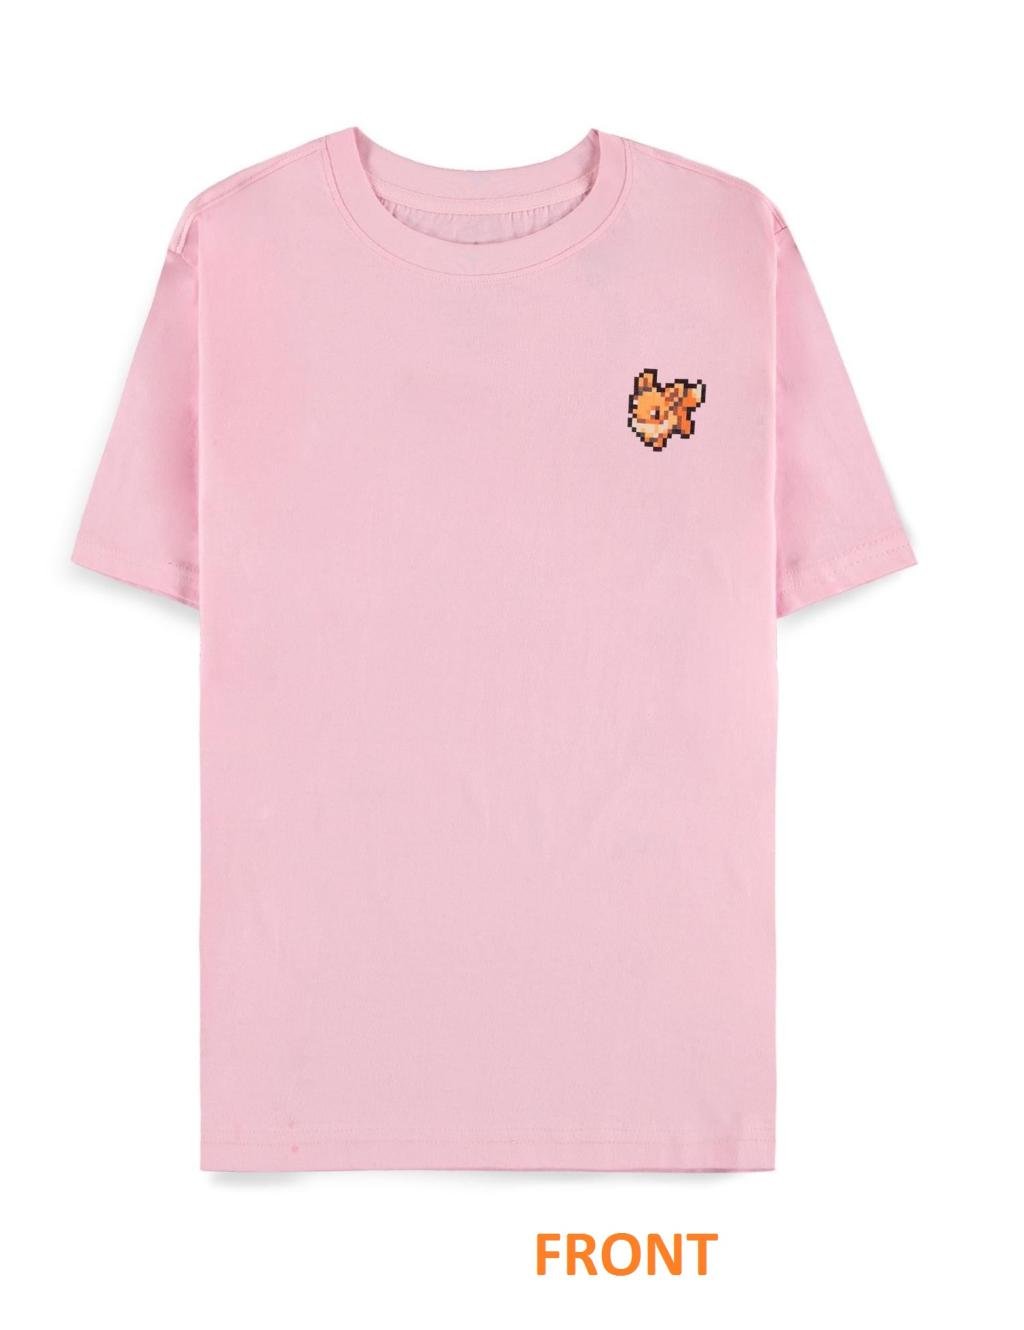 POKEMON - Pixel Eevee - Women T-Shirt (XL)